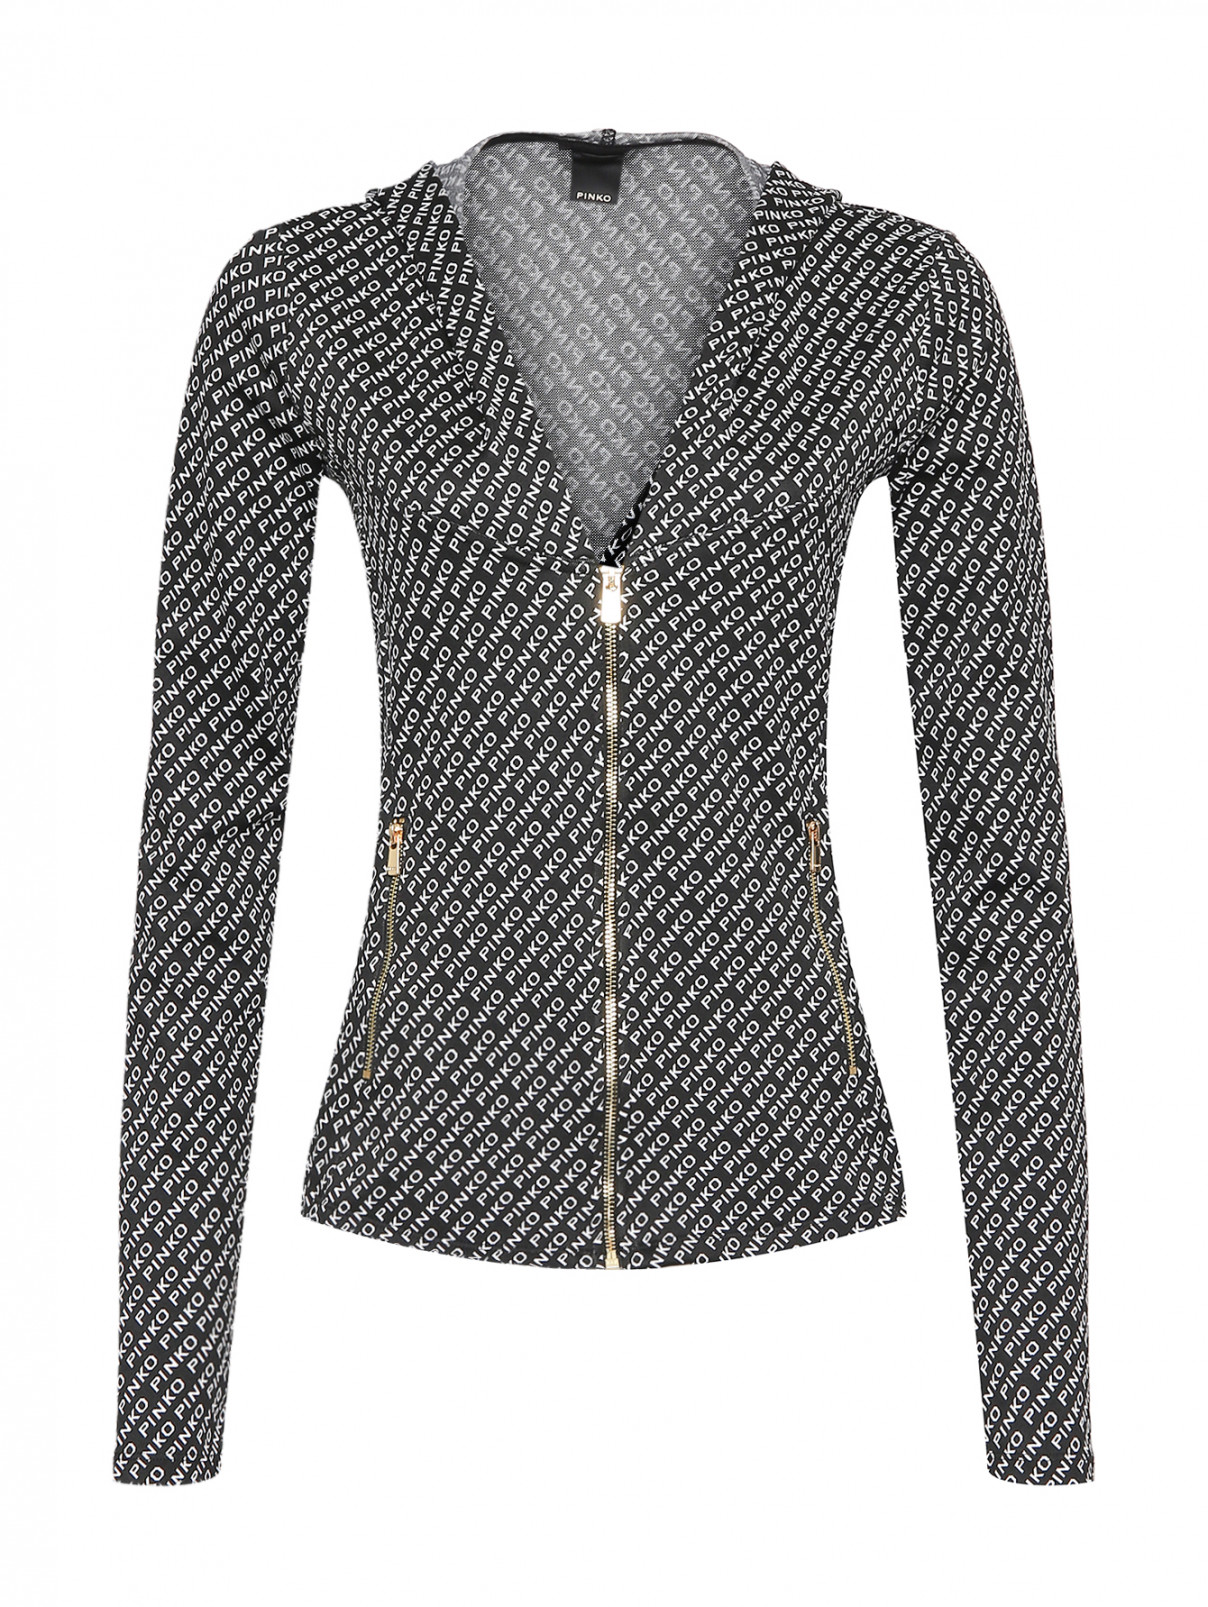 Трикотажная блуза на молнии с капюшоном PINKO  –  Общий вид  – Цвет:  Черный